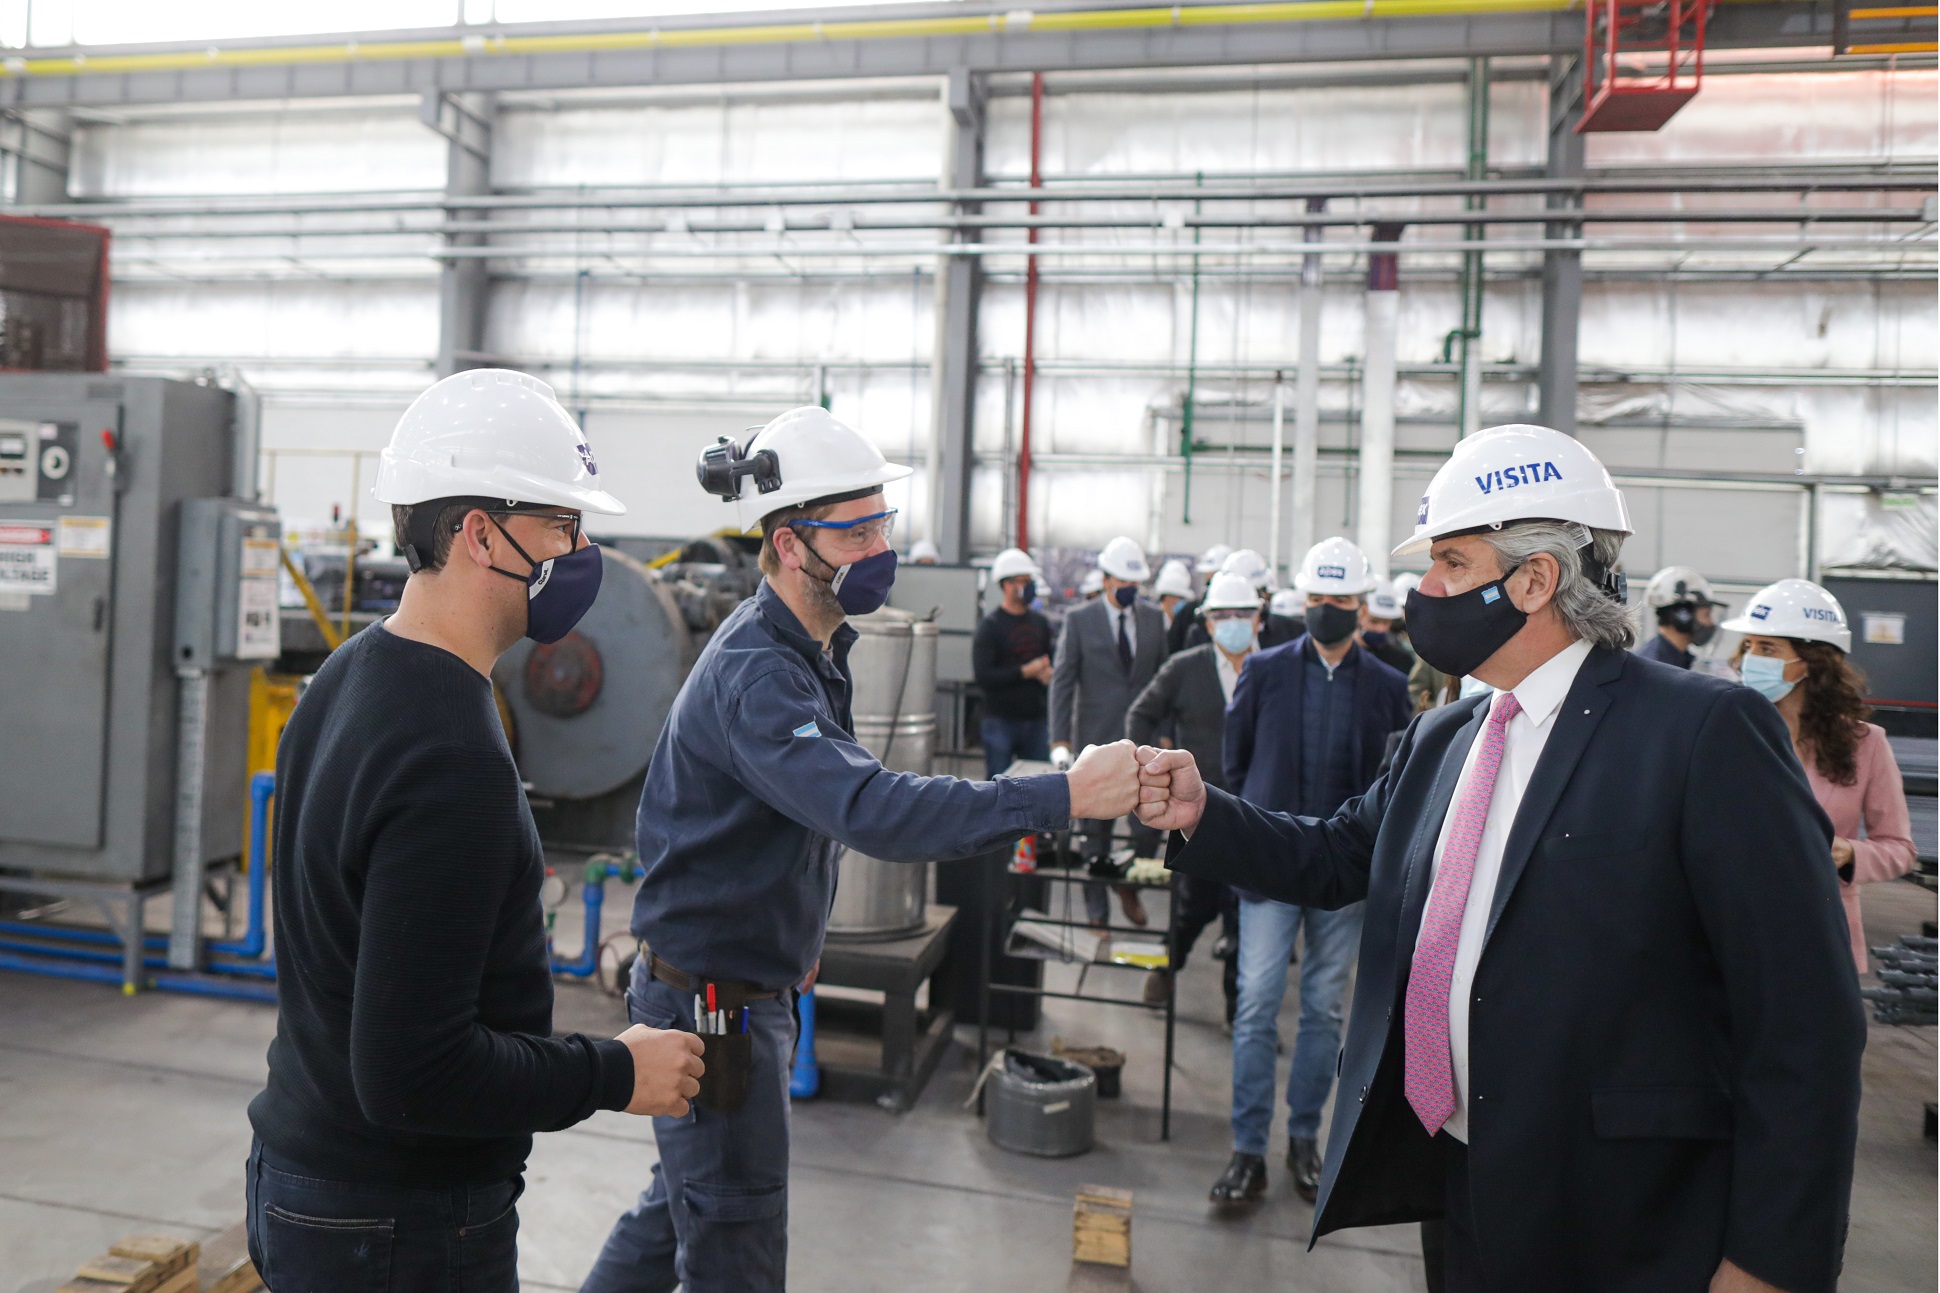 El Presidente recorrió una empresa metalúrgica en La Pampa: “Argentina se encuentra en un proceso real de recuperación económica”